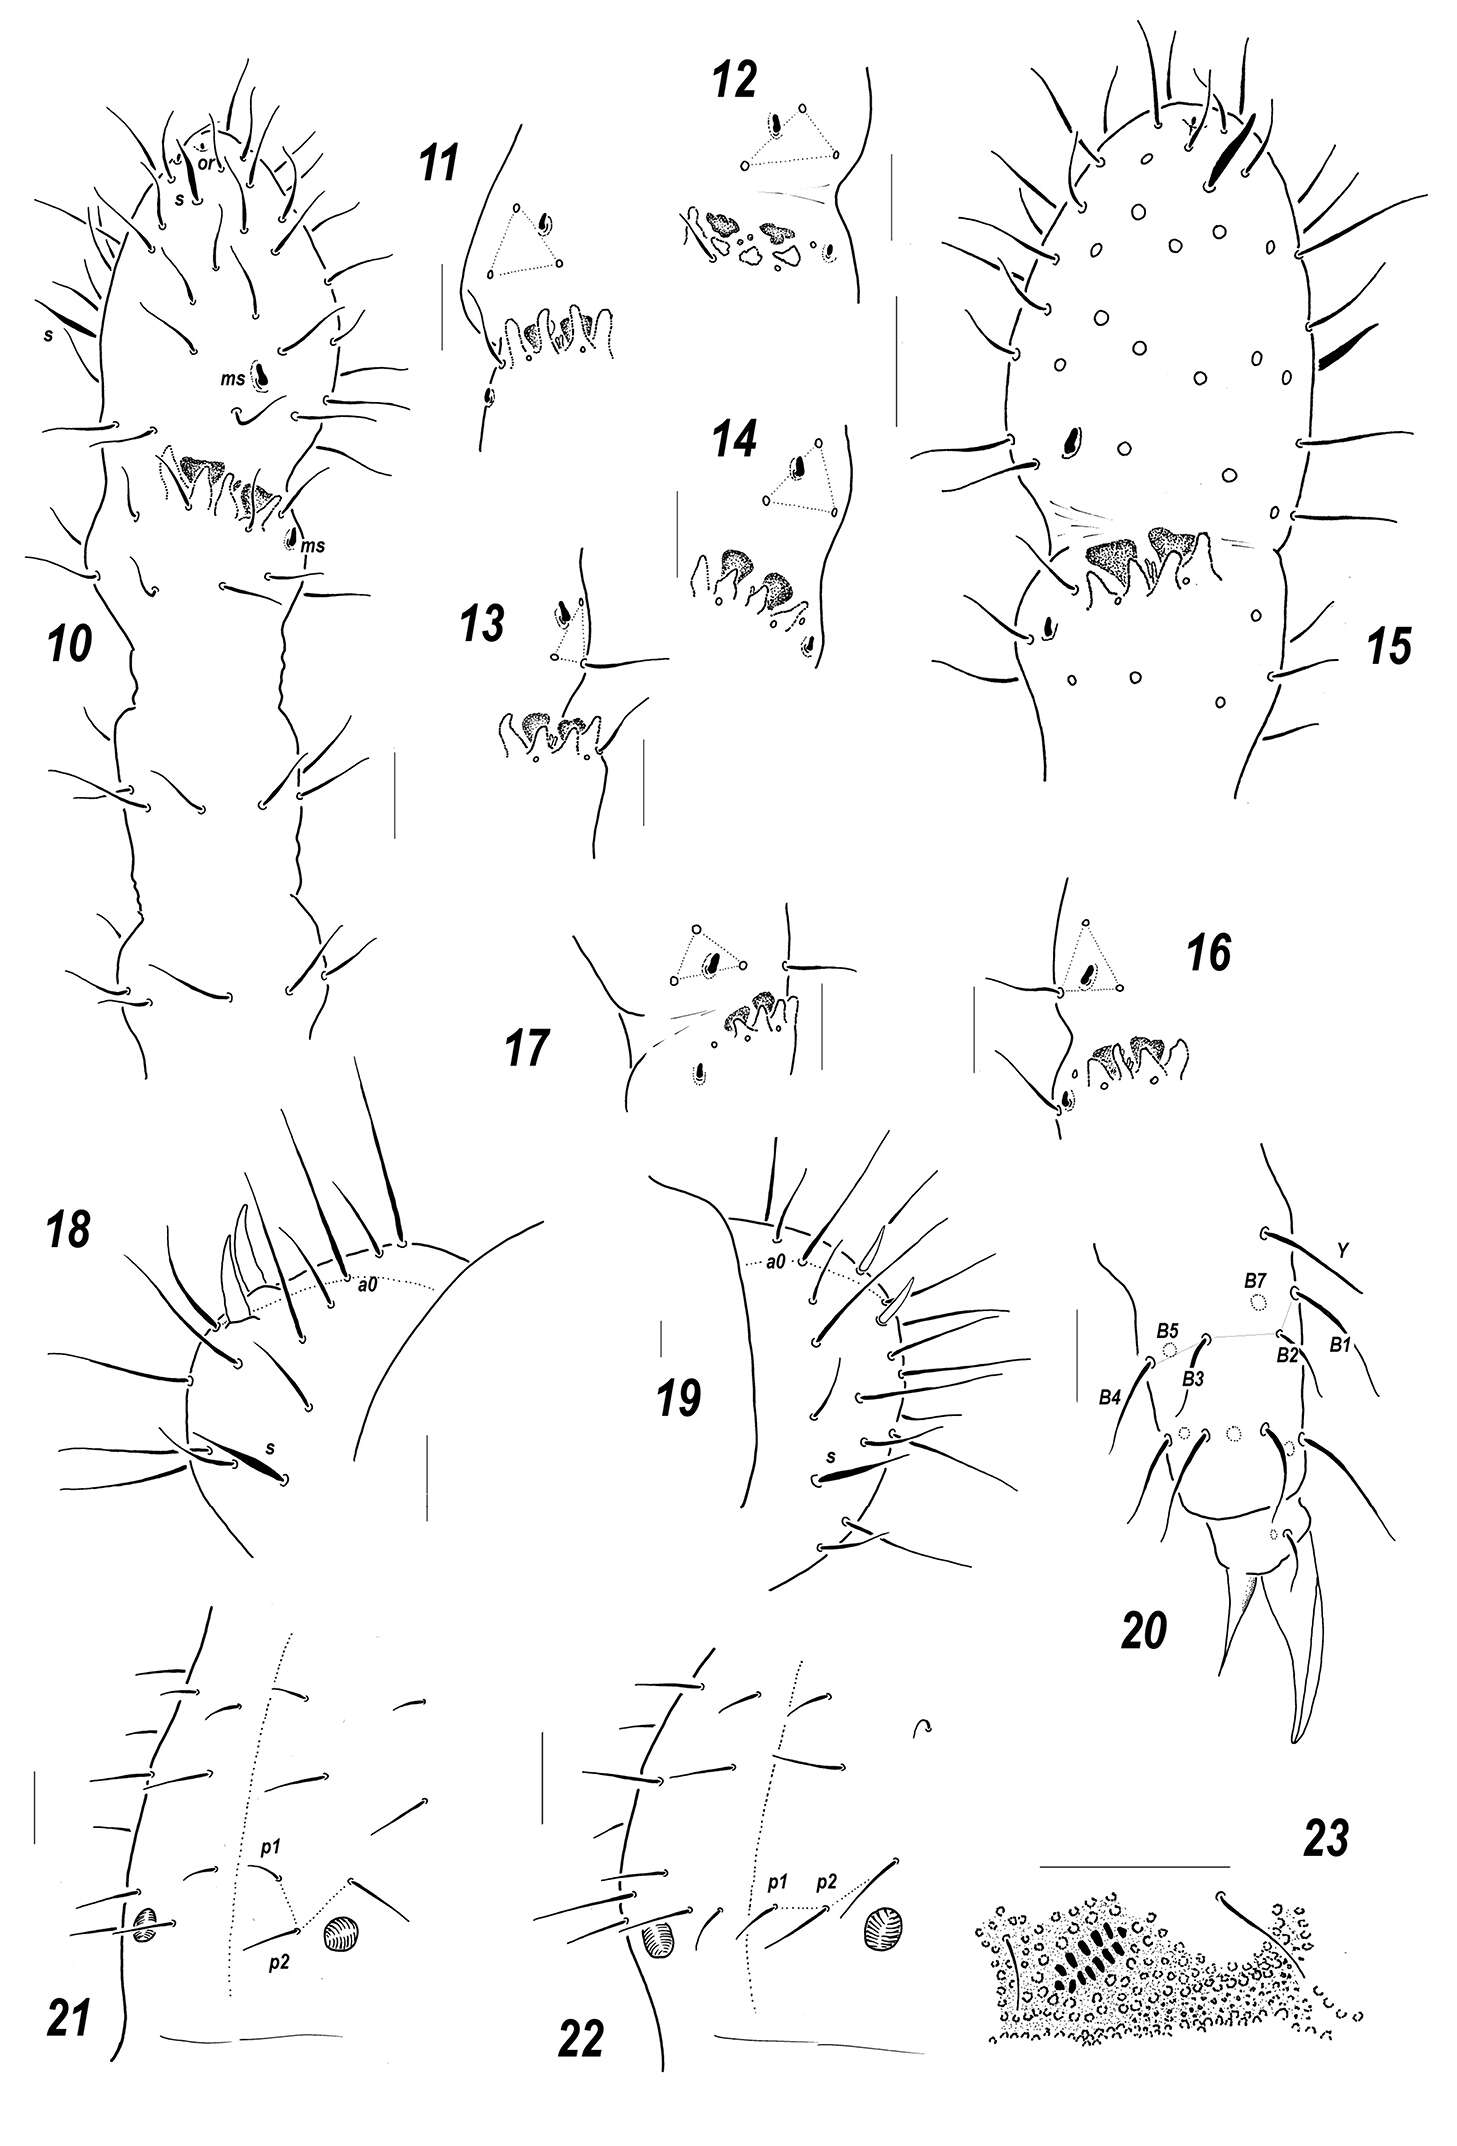 Image of Sensillonychiurus vegae Babenko, Chimitova & Stebaeva 2011